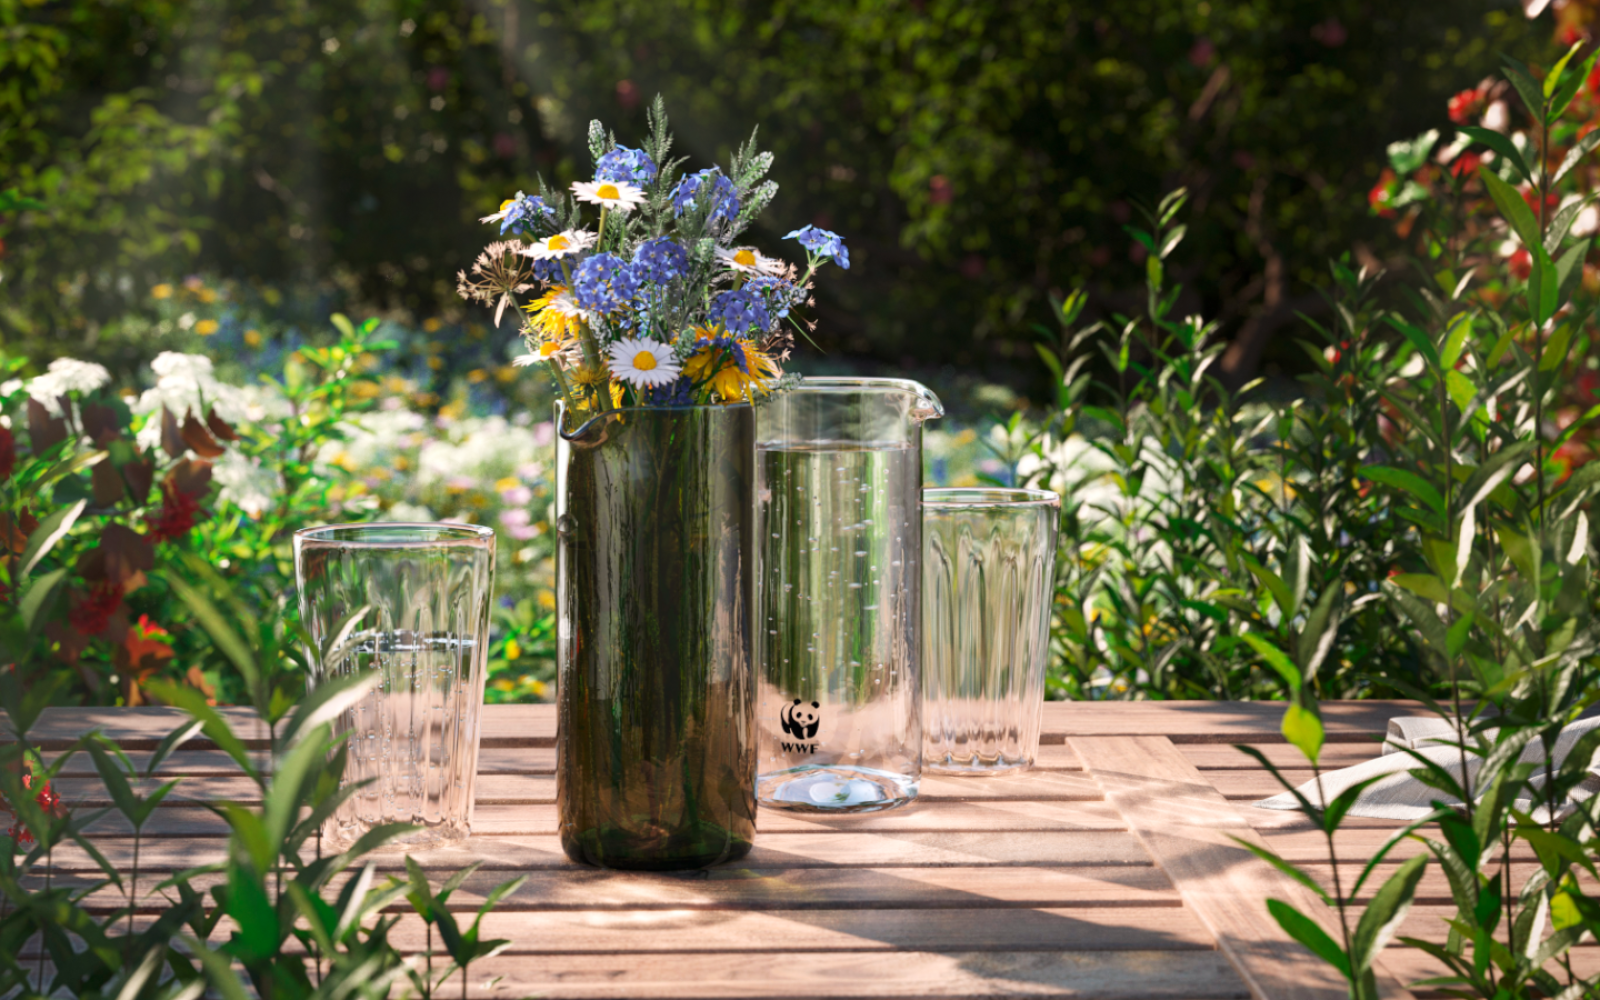 Ostern WWF Vase mit Blumen